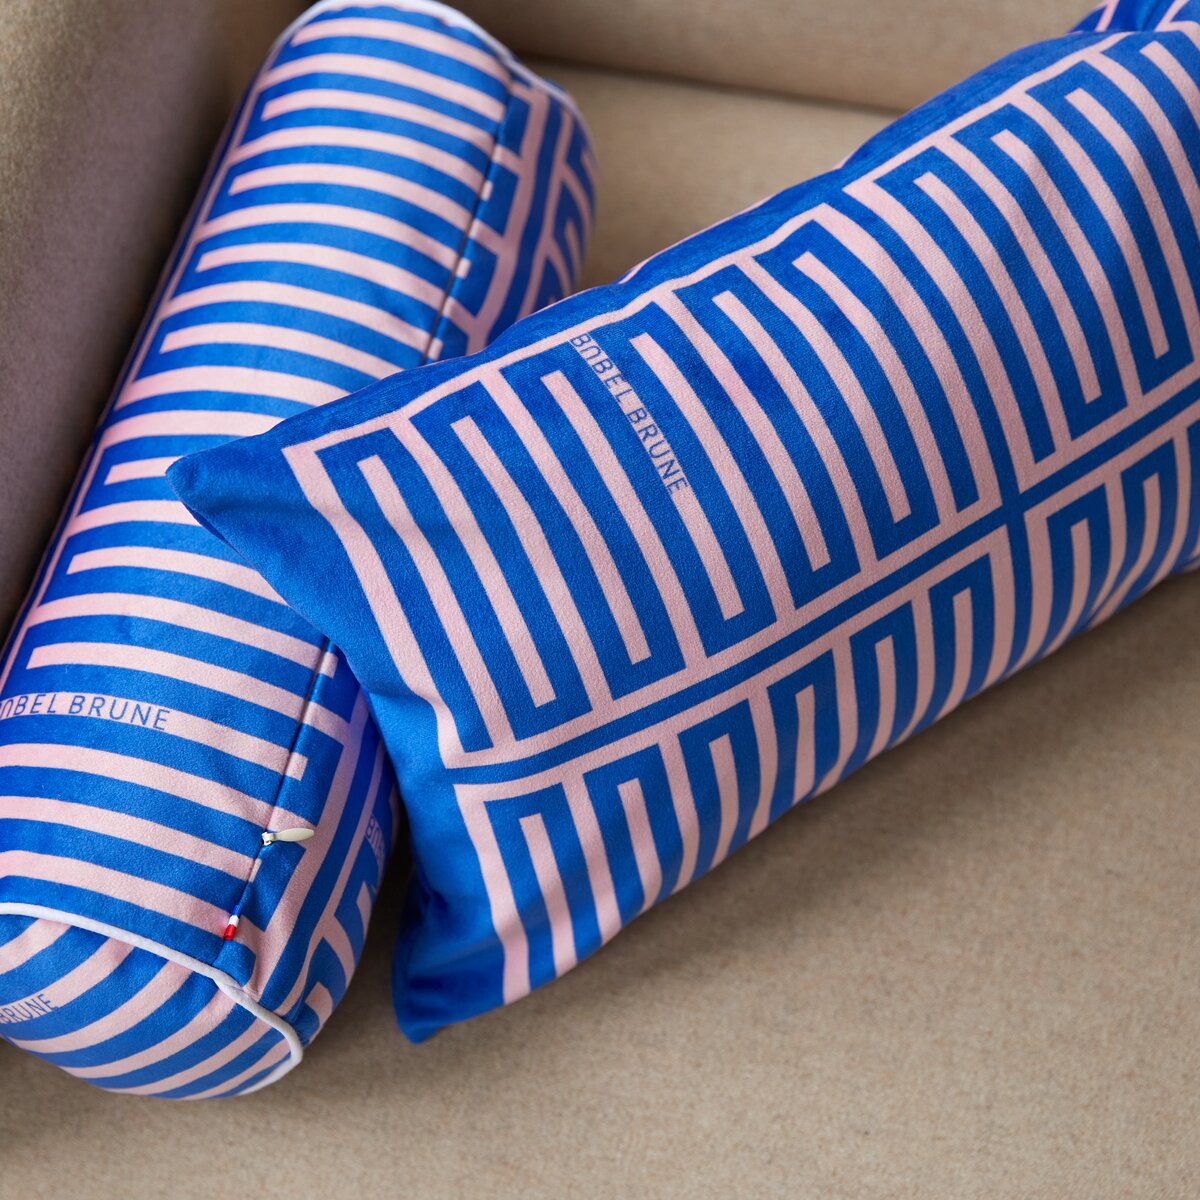 Cuscino in seta da 50 x 30 cm - Articoli tessili decorativi - Tikamoon